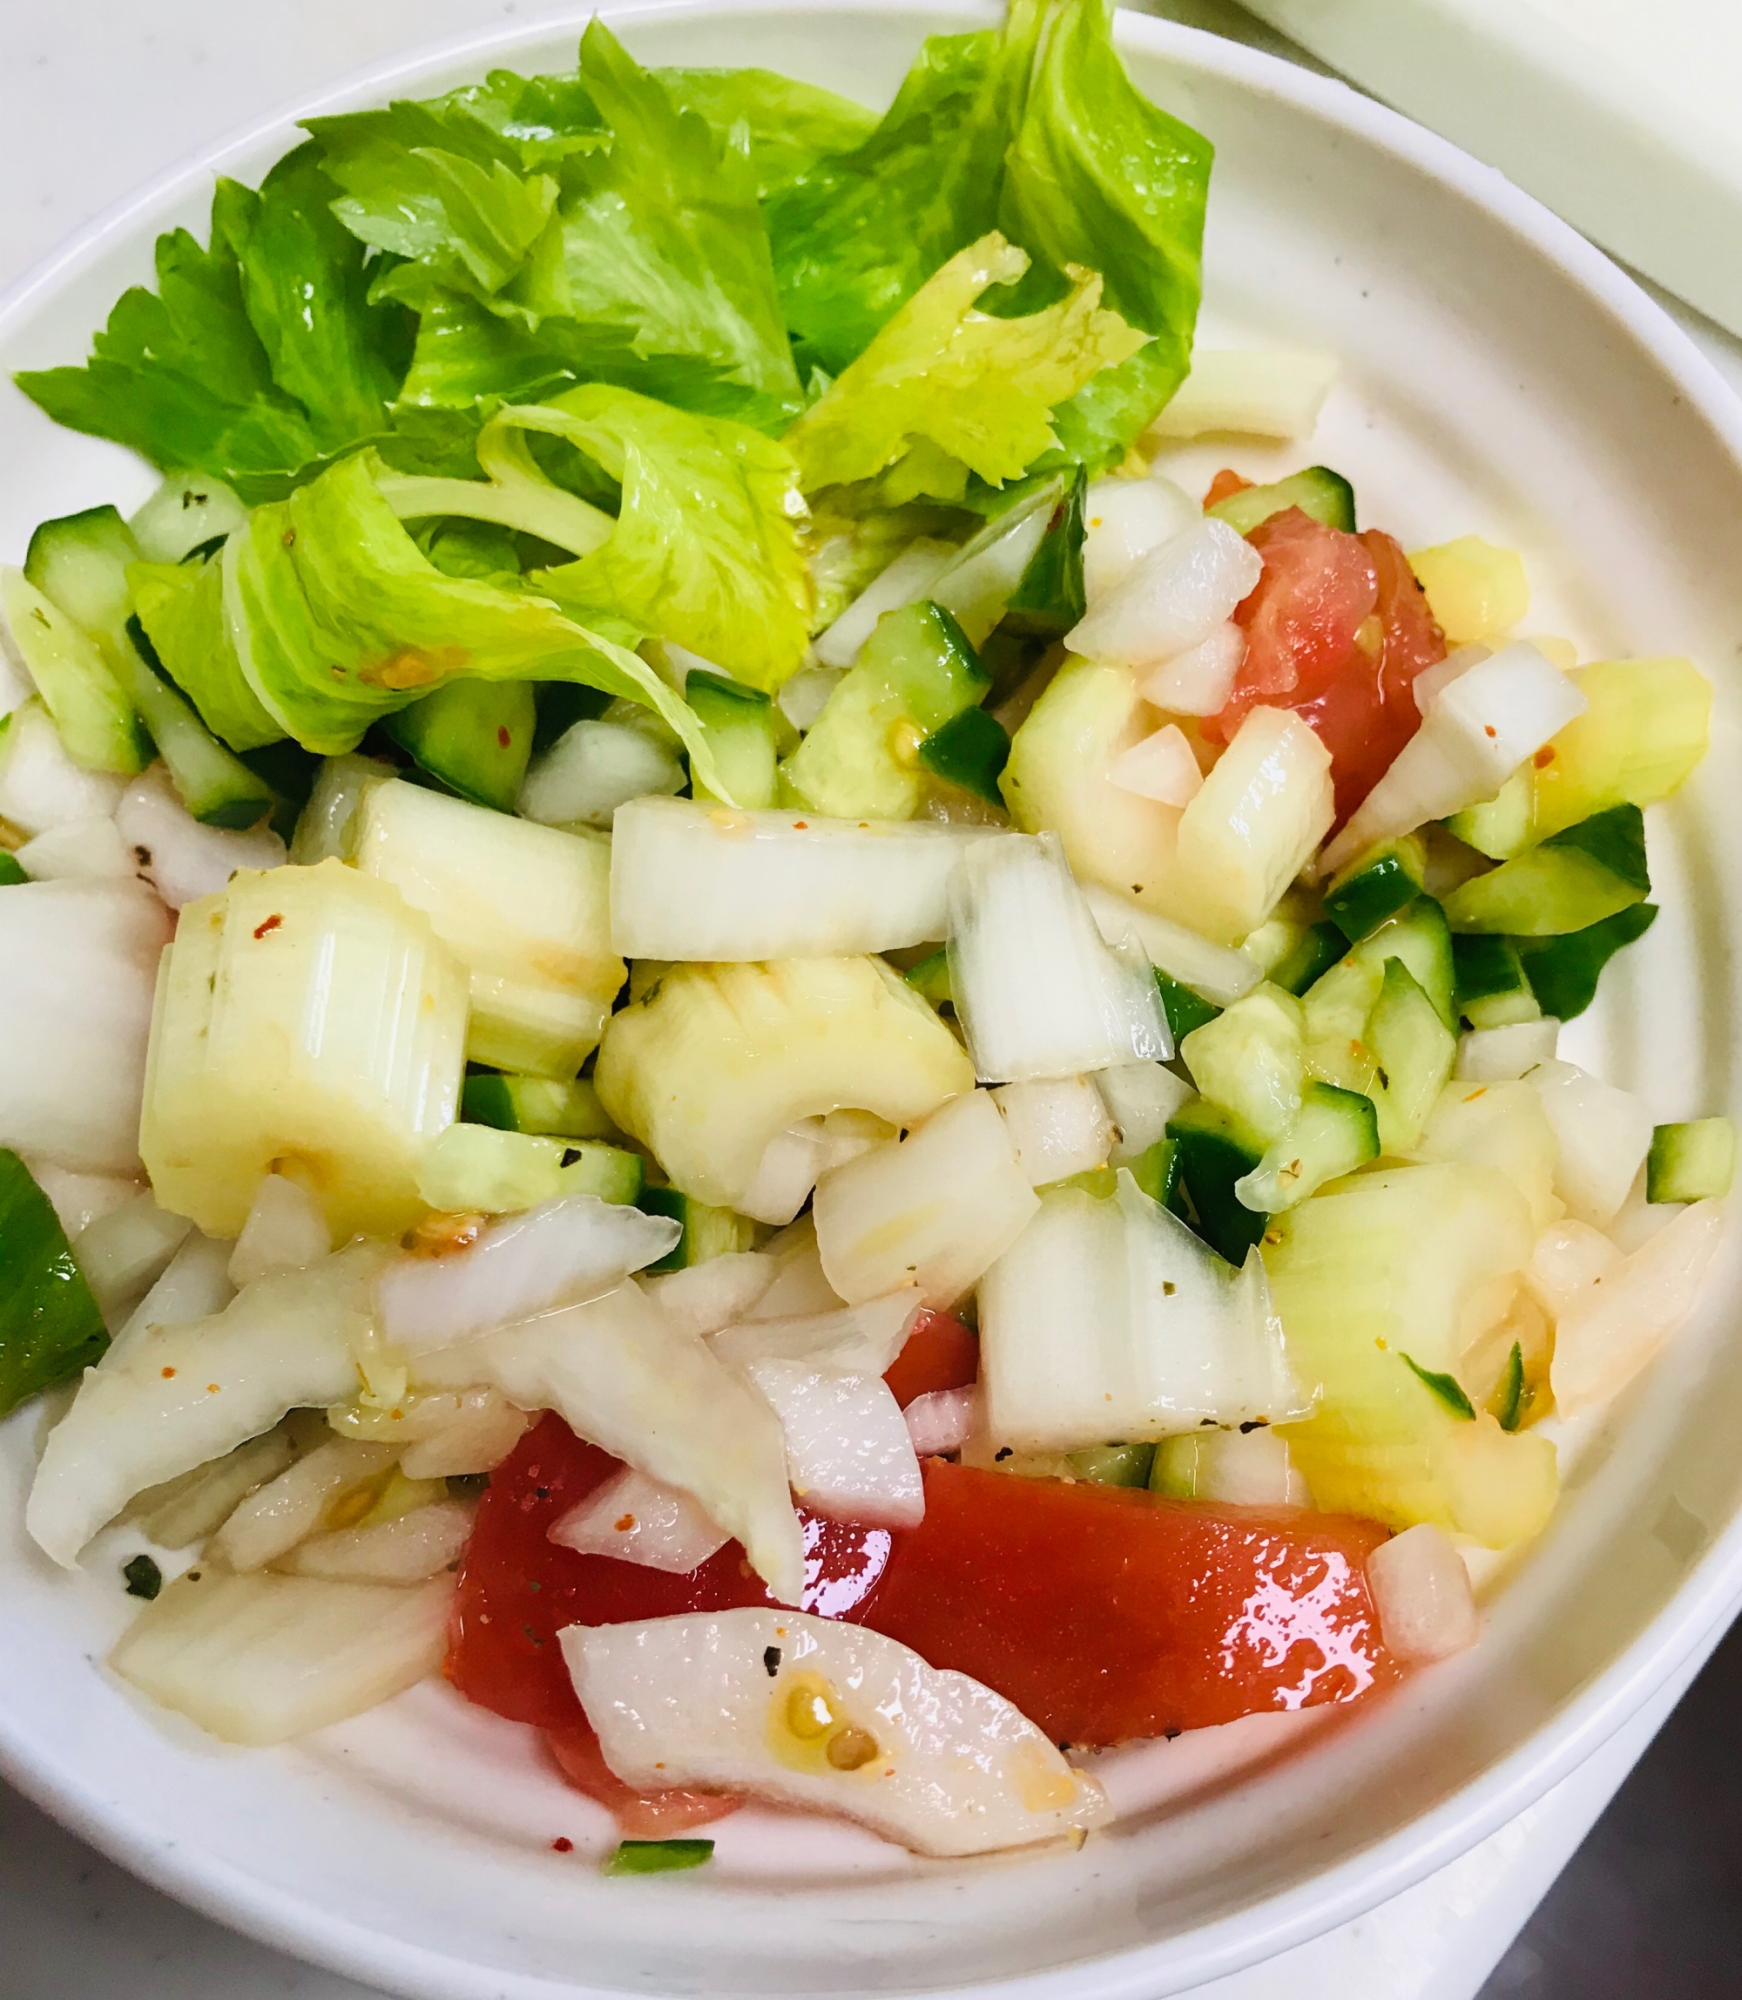 玉ねぎとビネガー香る♫バル風粗みじん切りサラダ